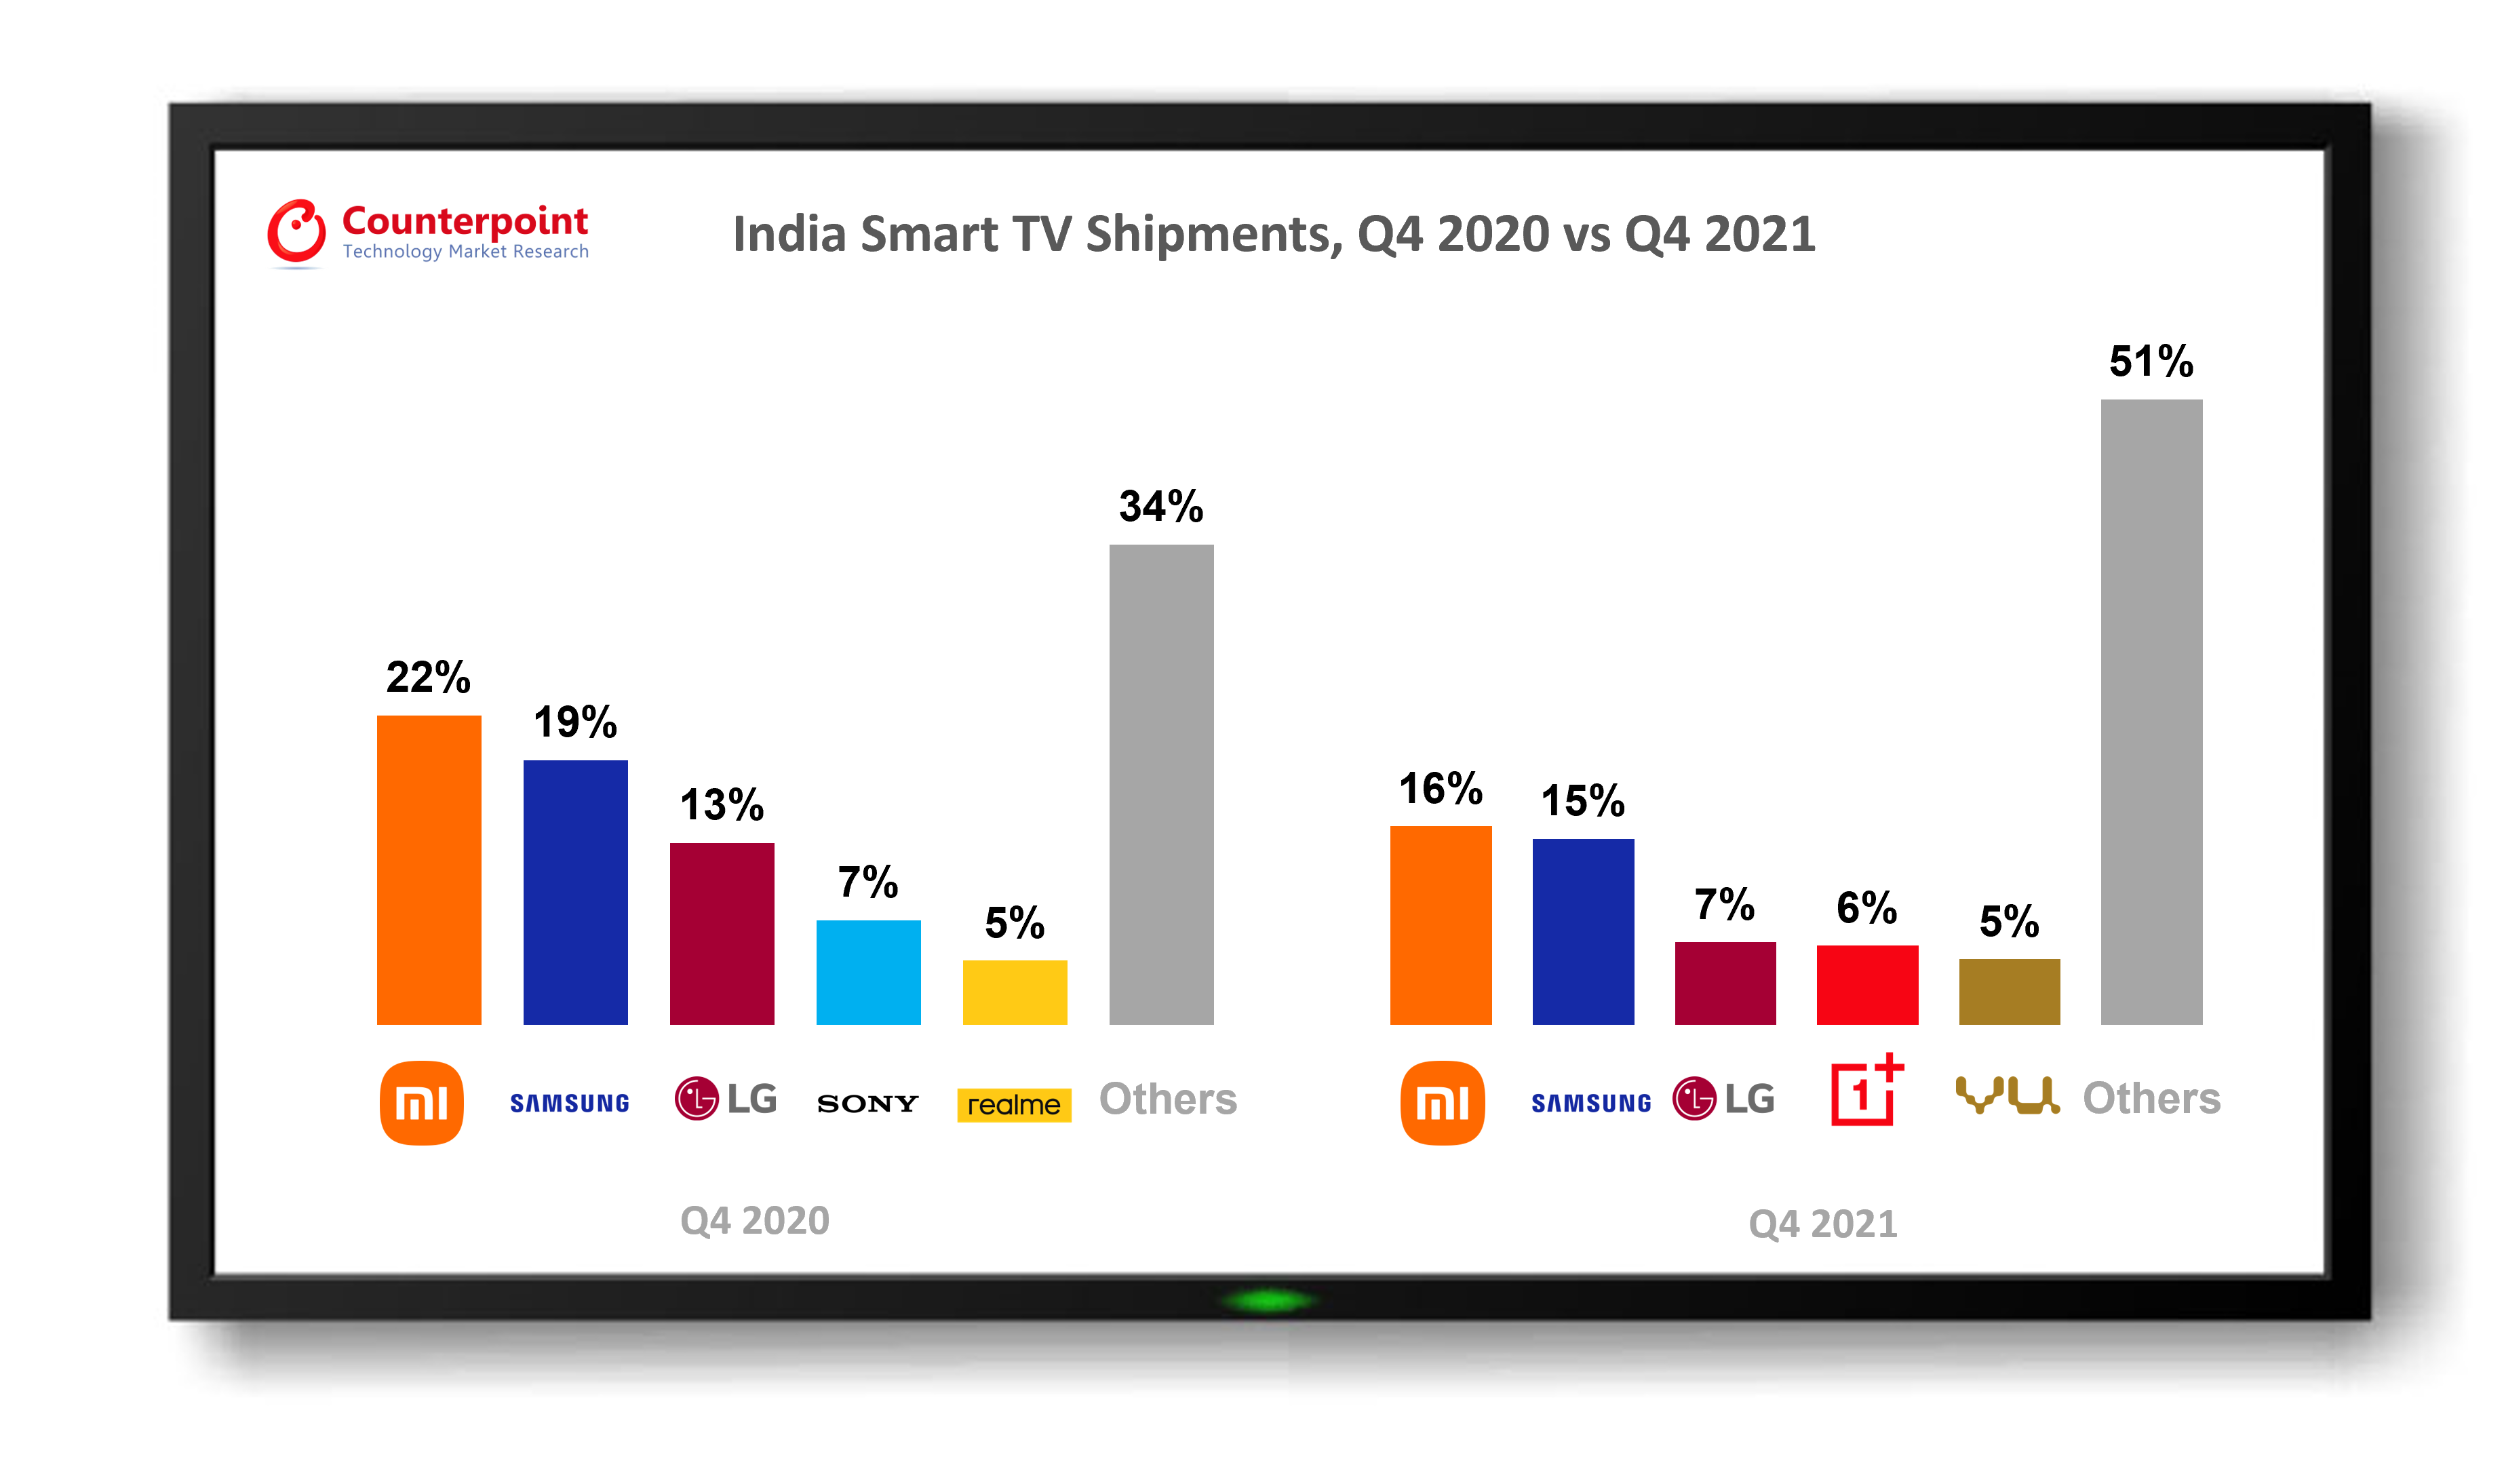 India Smart TV Market Share of Top 5 Brands, Q4 2020 vs Q4 2021